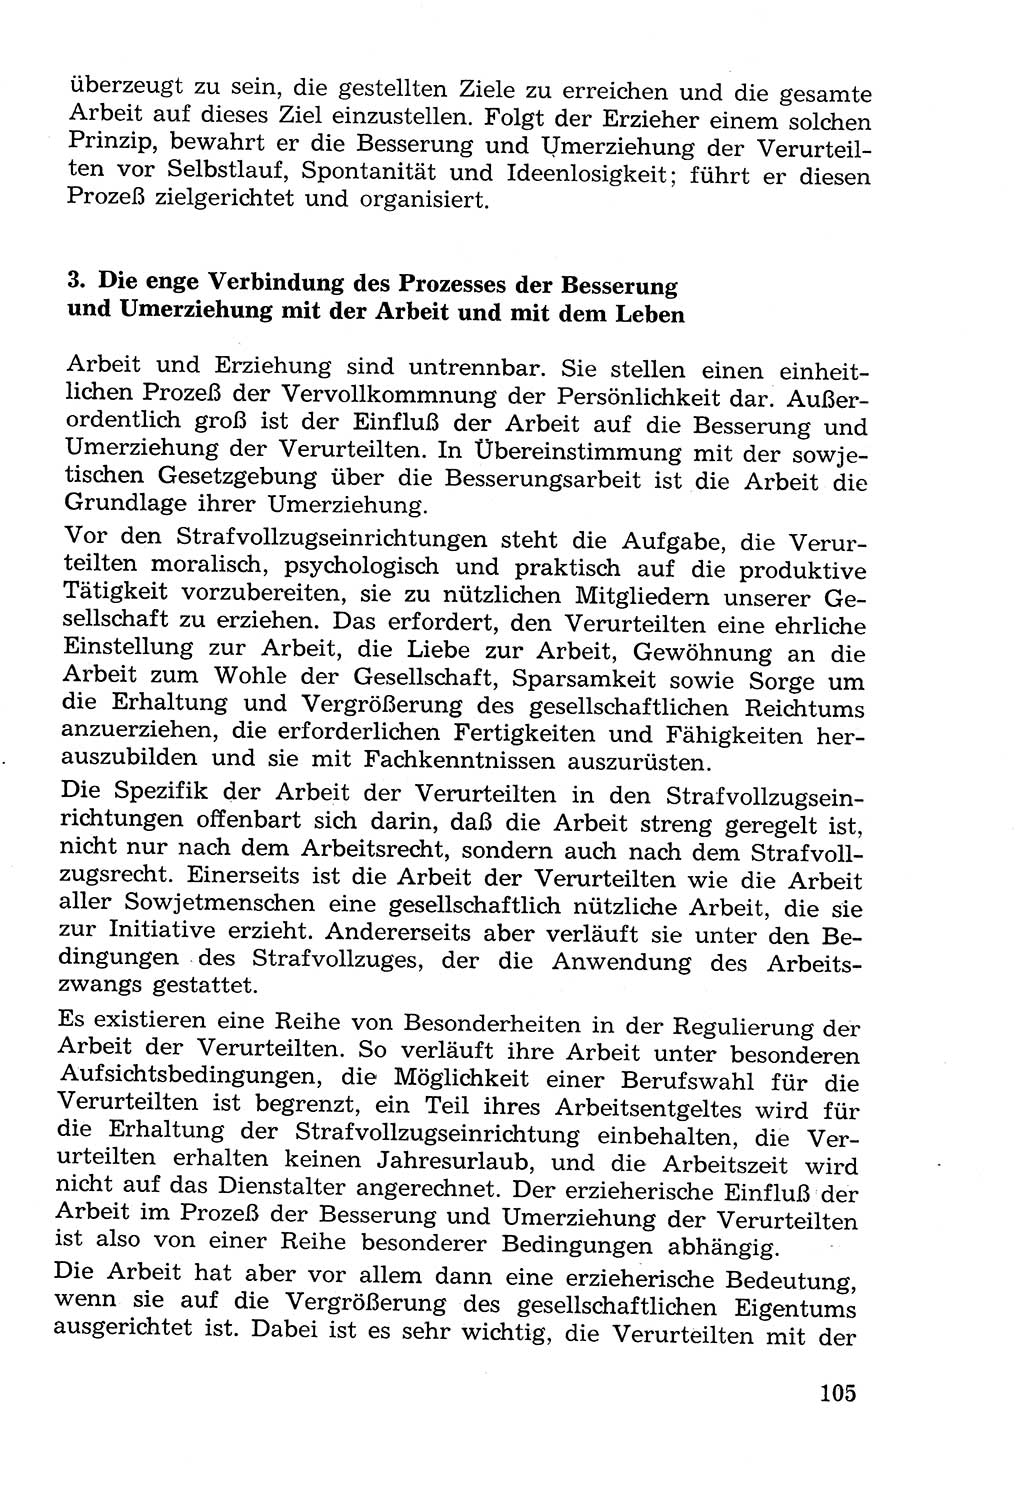 Lehrbuch der Strafvollzugspädagogik [Deutsche Demokratische Republik (DDR)] 1969, Seite 105 (Lb. SV-Pd. DDR 1969, S. 105)